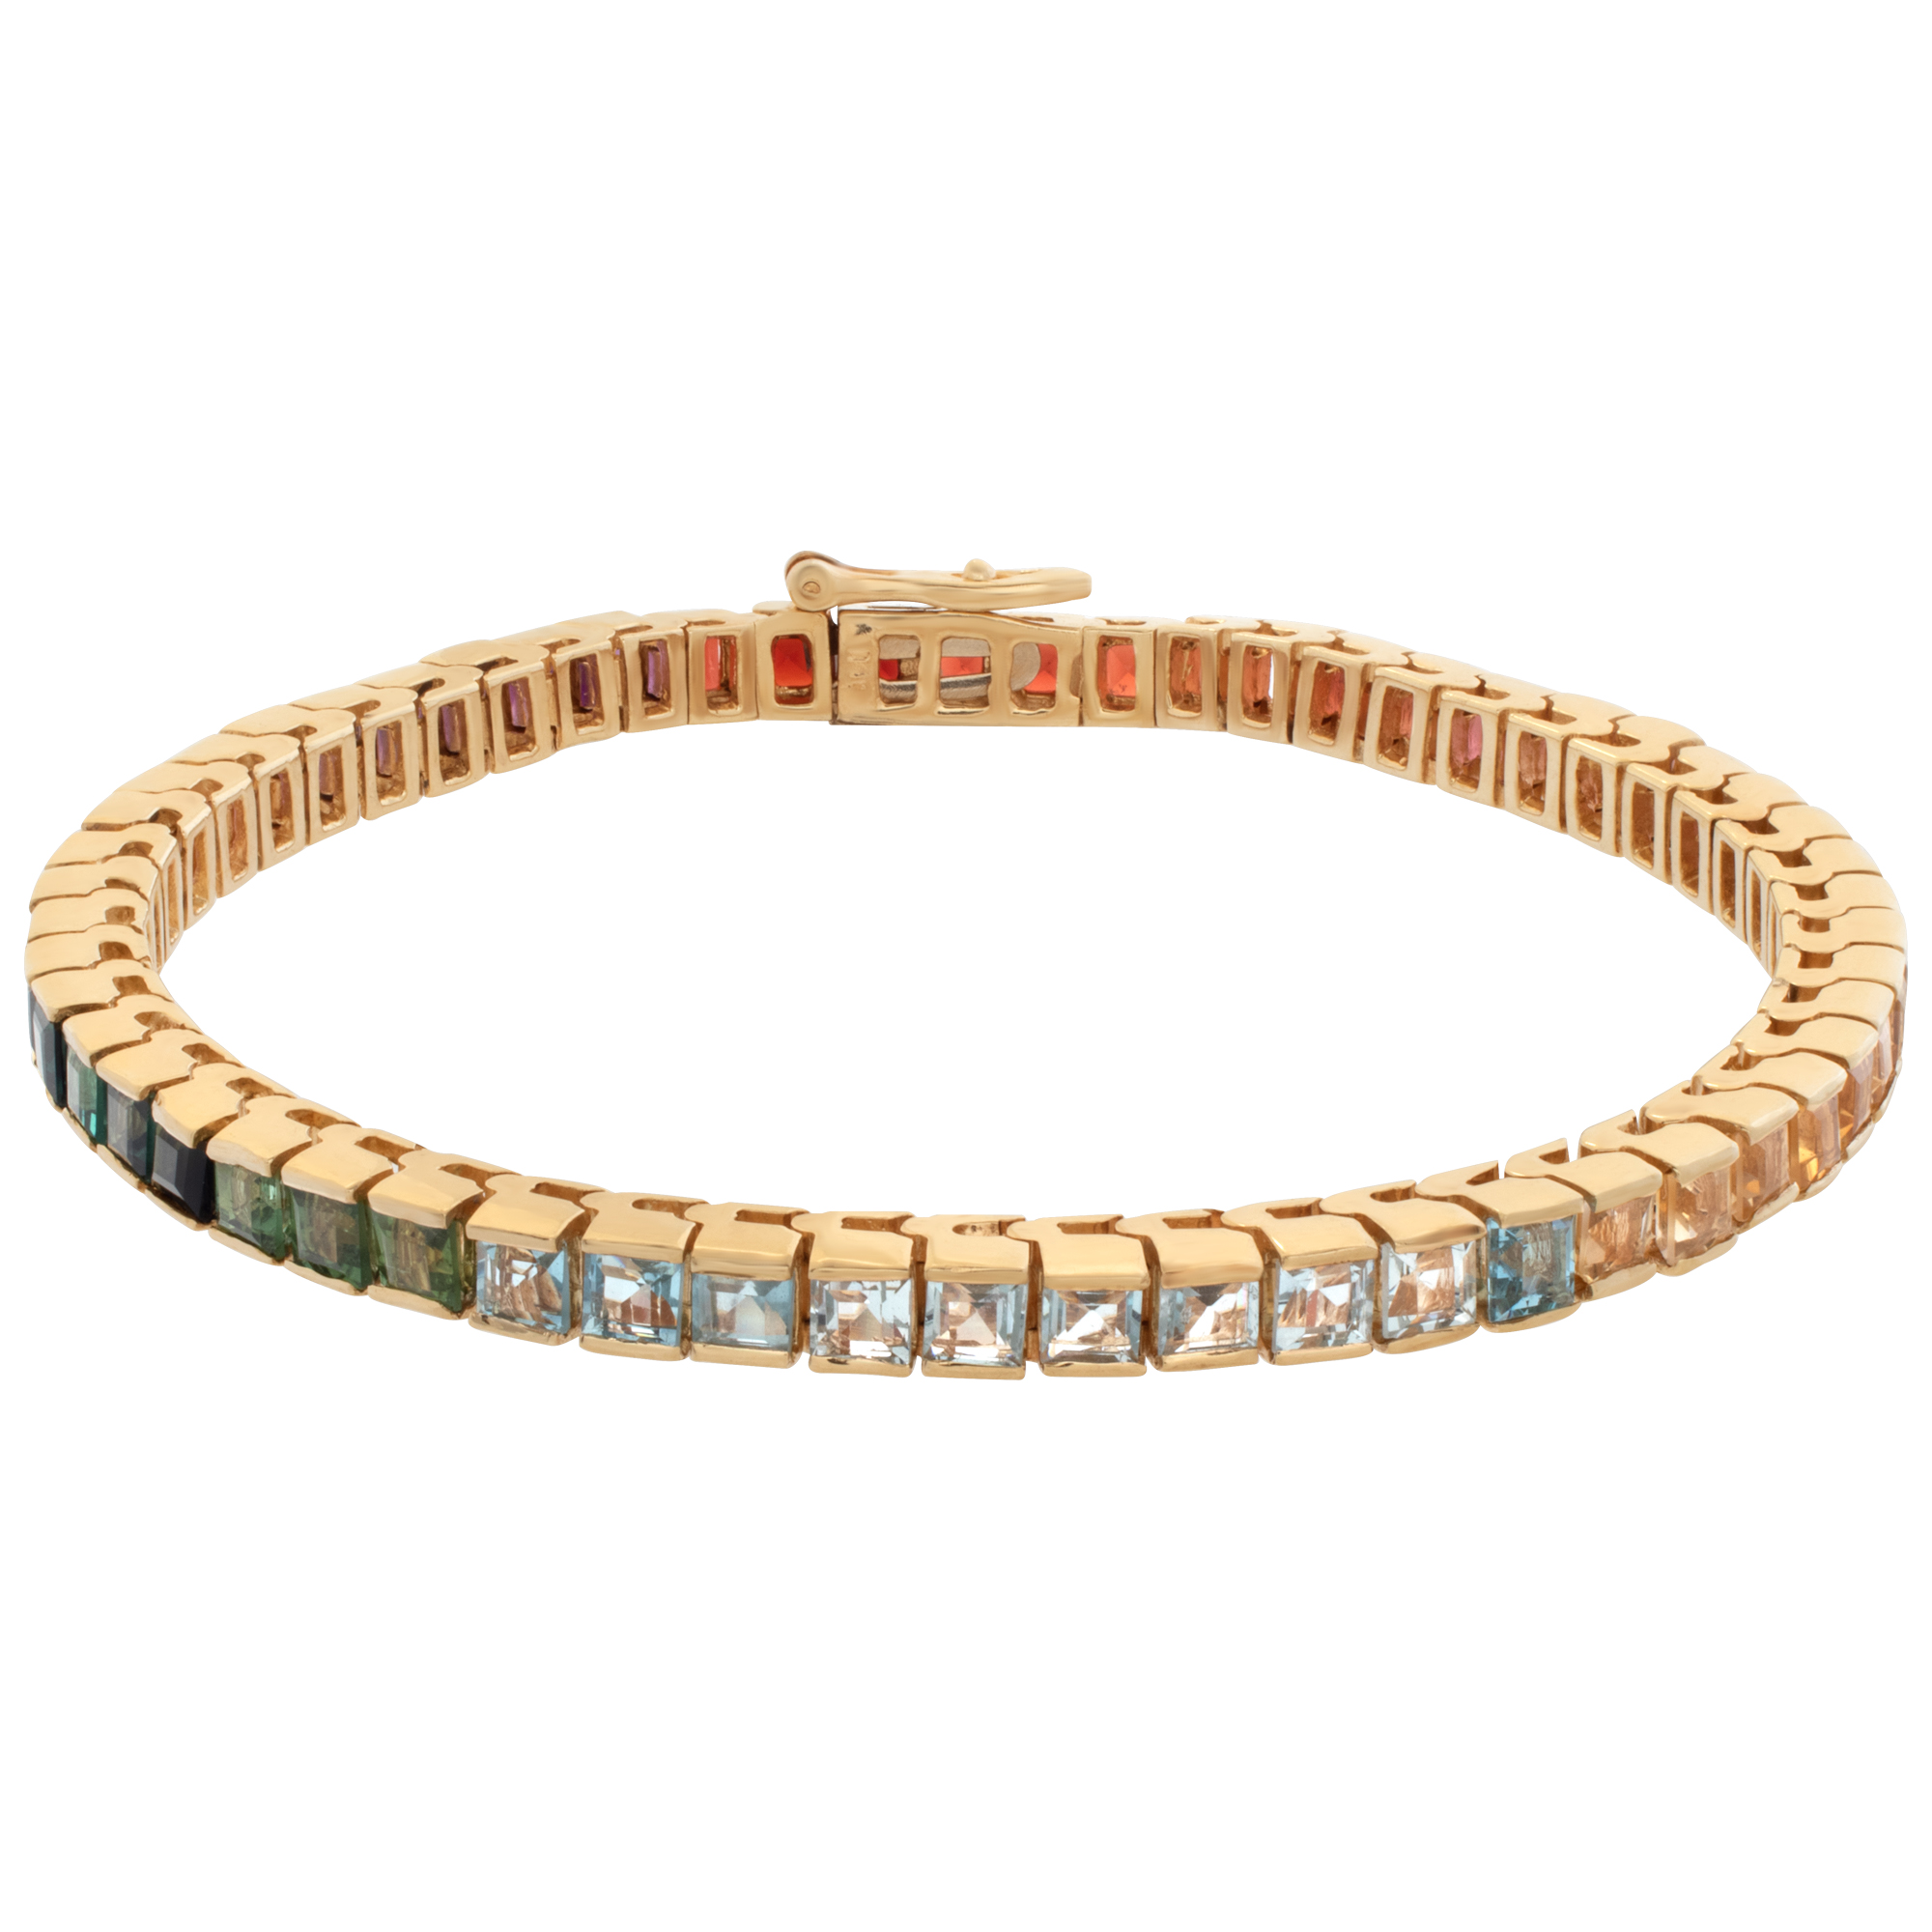 Tutti-Frutti semi-precious stone line bracelet in 14k yellow gold